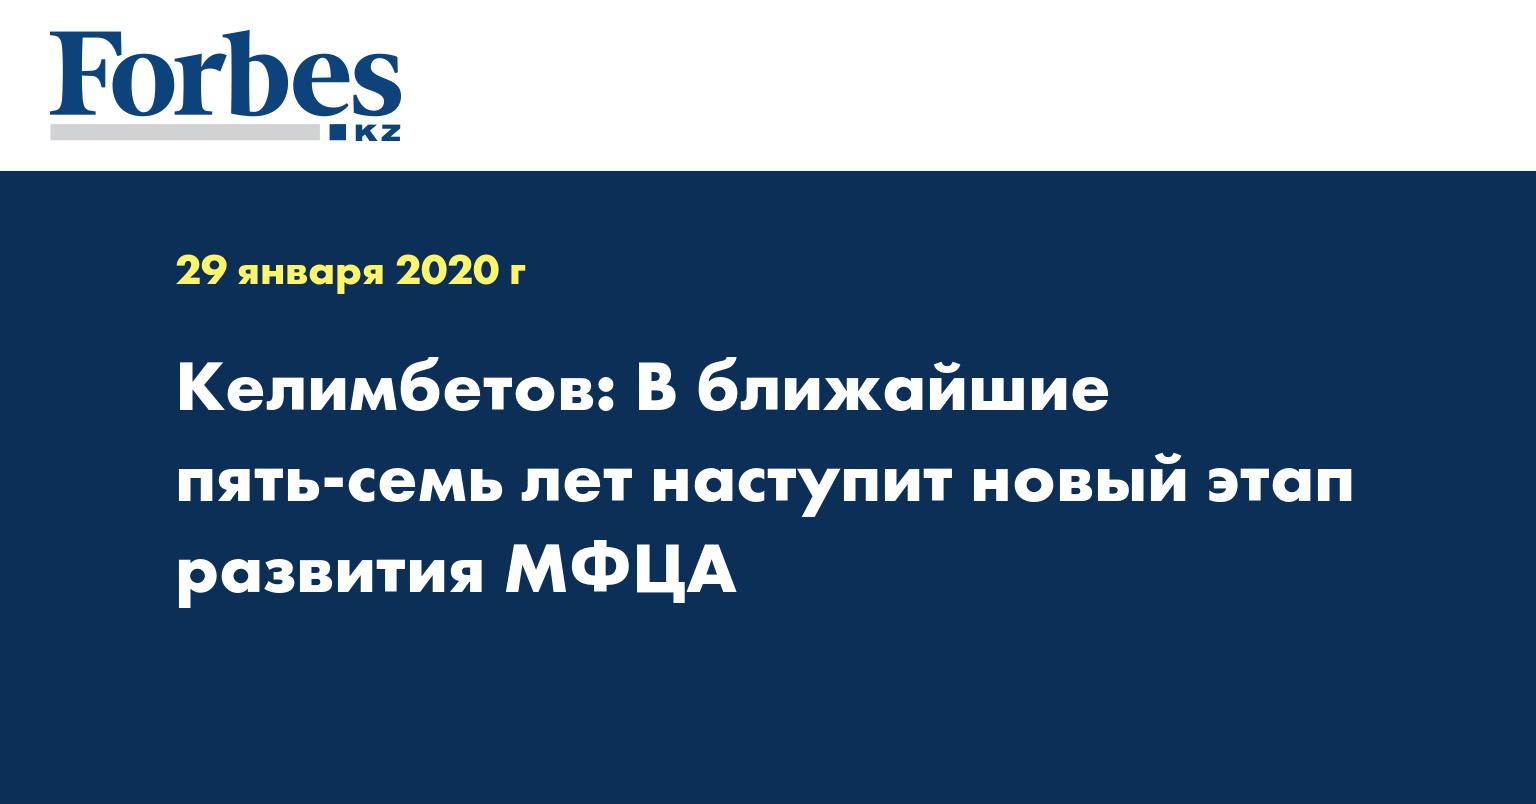 Келимбетов: В ближайшие пять-семь лет наступит новый этап развития МФЦА